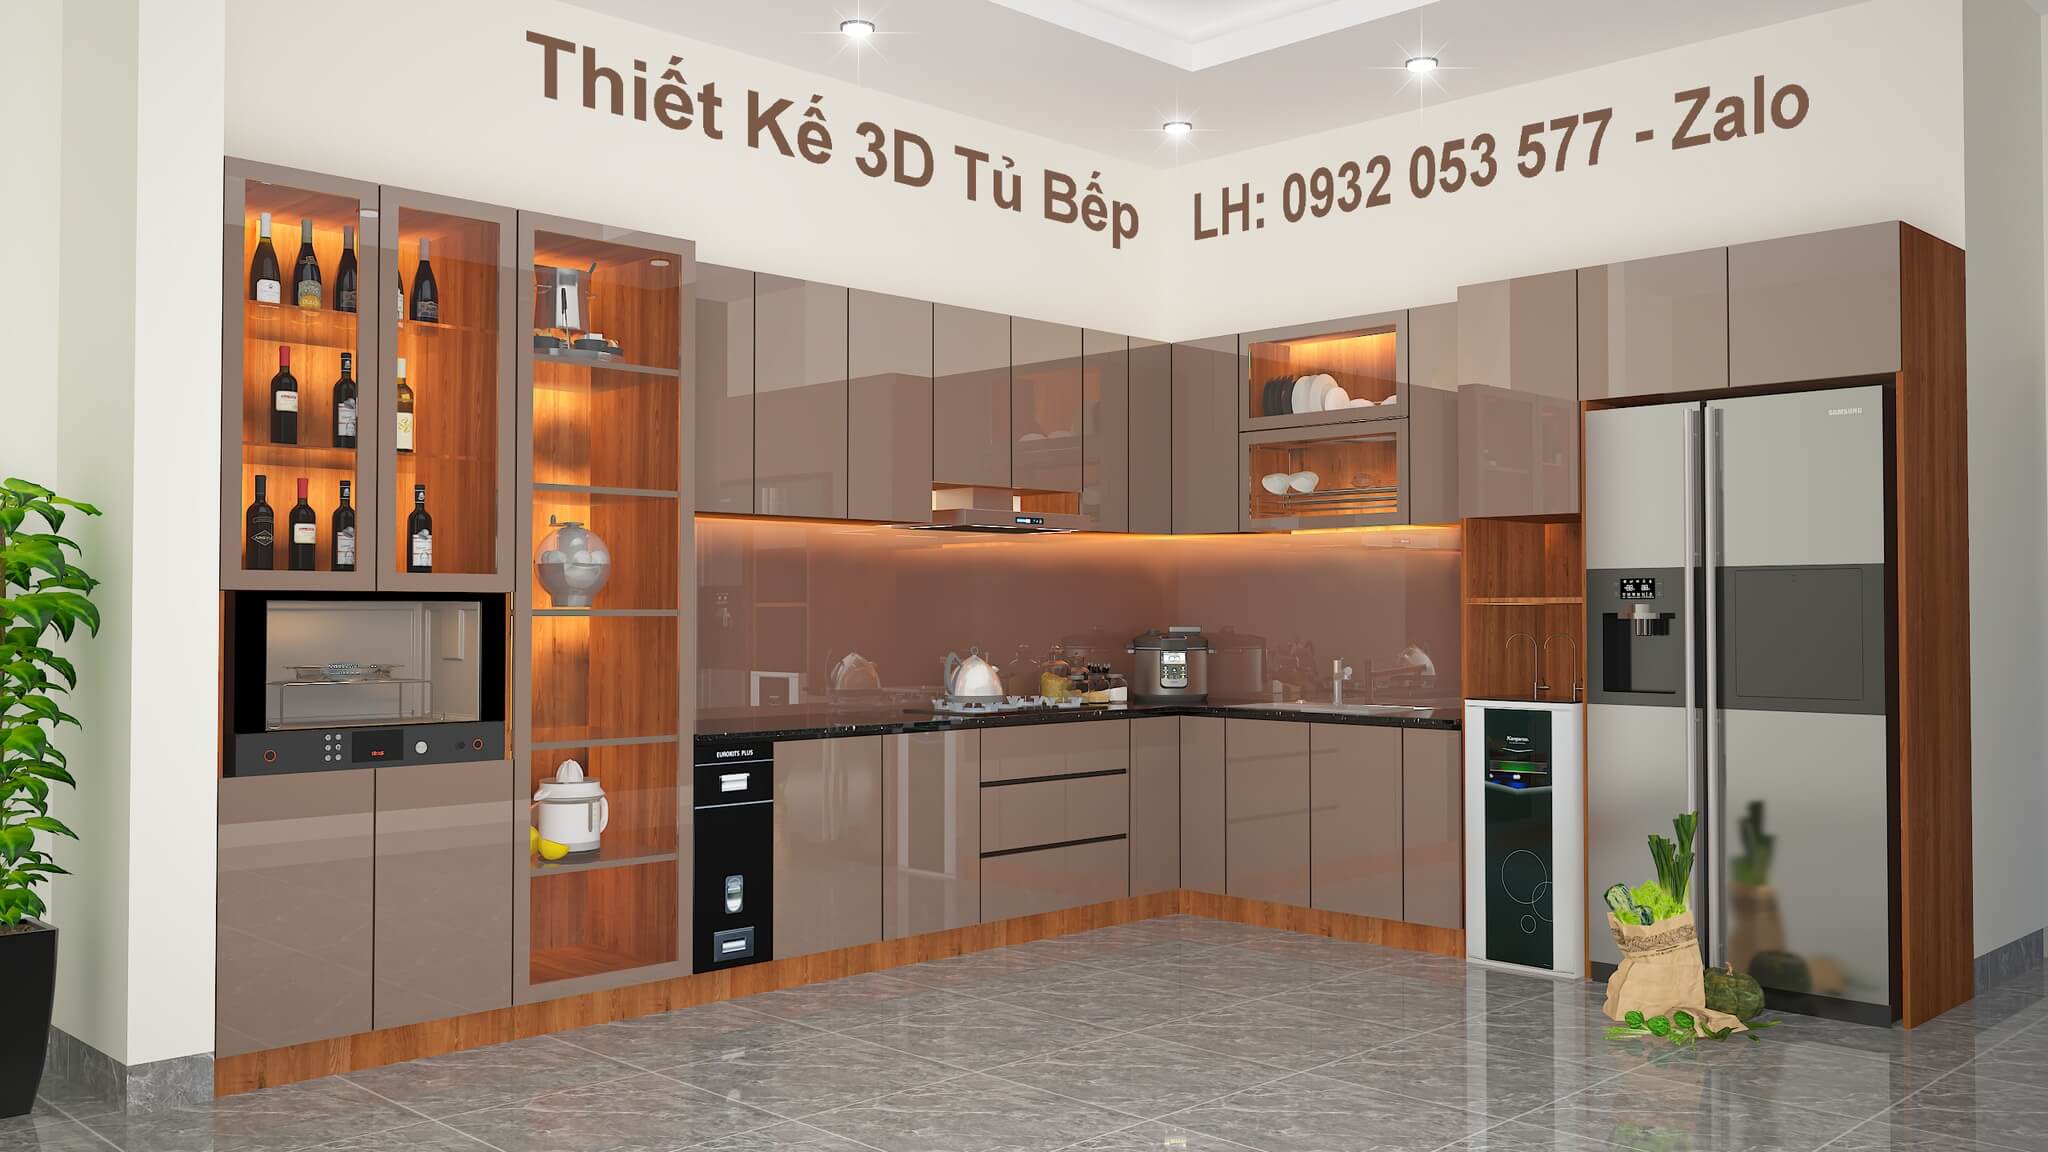 Top 10 thiết kế mẫu tủ bếp đẹp cho chung cư nhà nhỏ tiện nghi